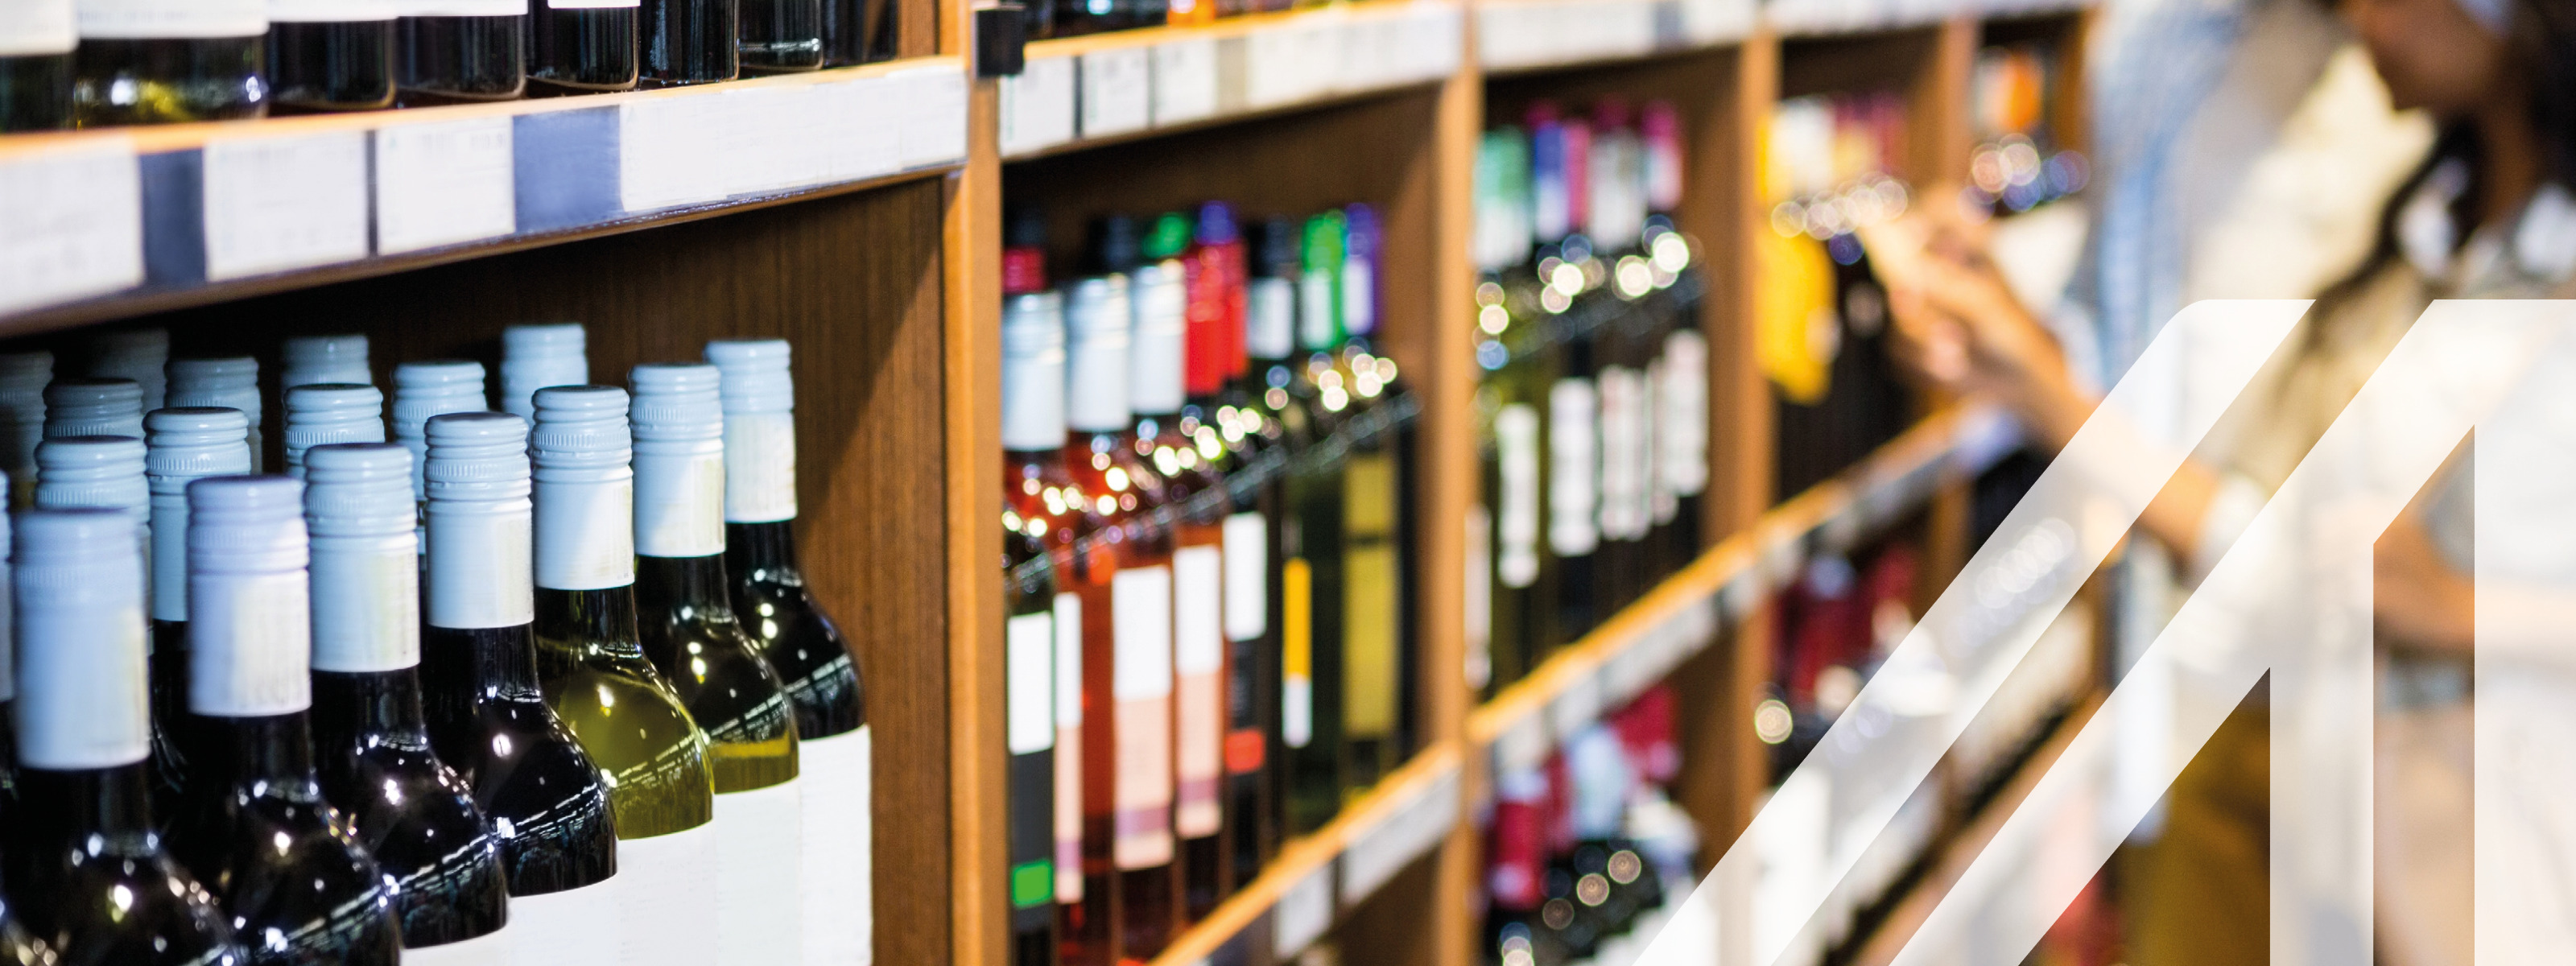 Pärchen vor Weinregal voller Flaschen bei der Auswahl einer Weinflasche im Lebensmittelgeschäft 